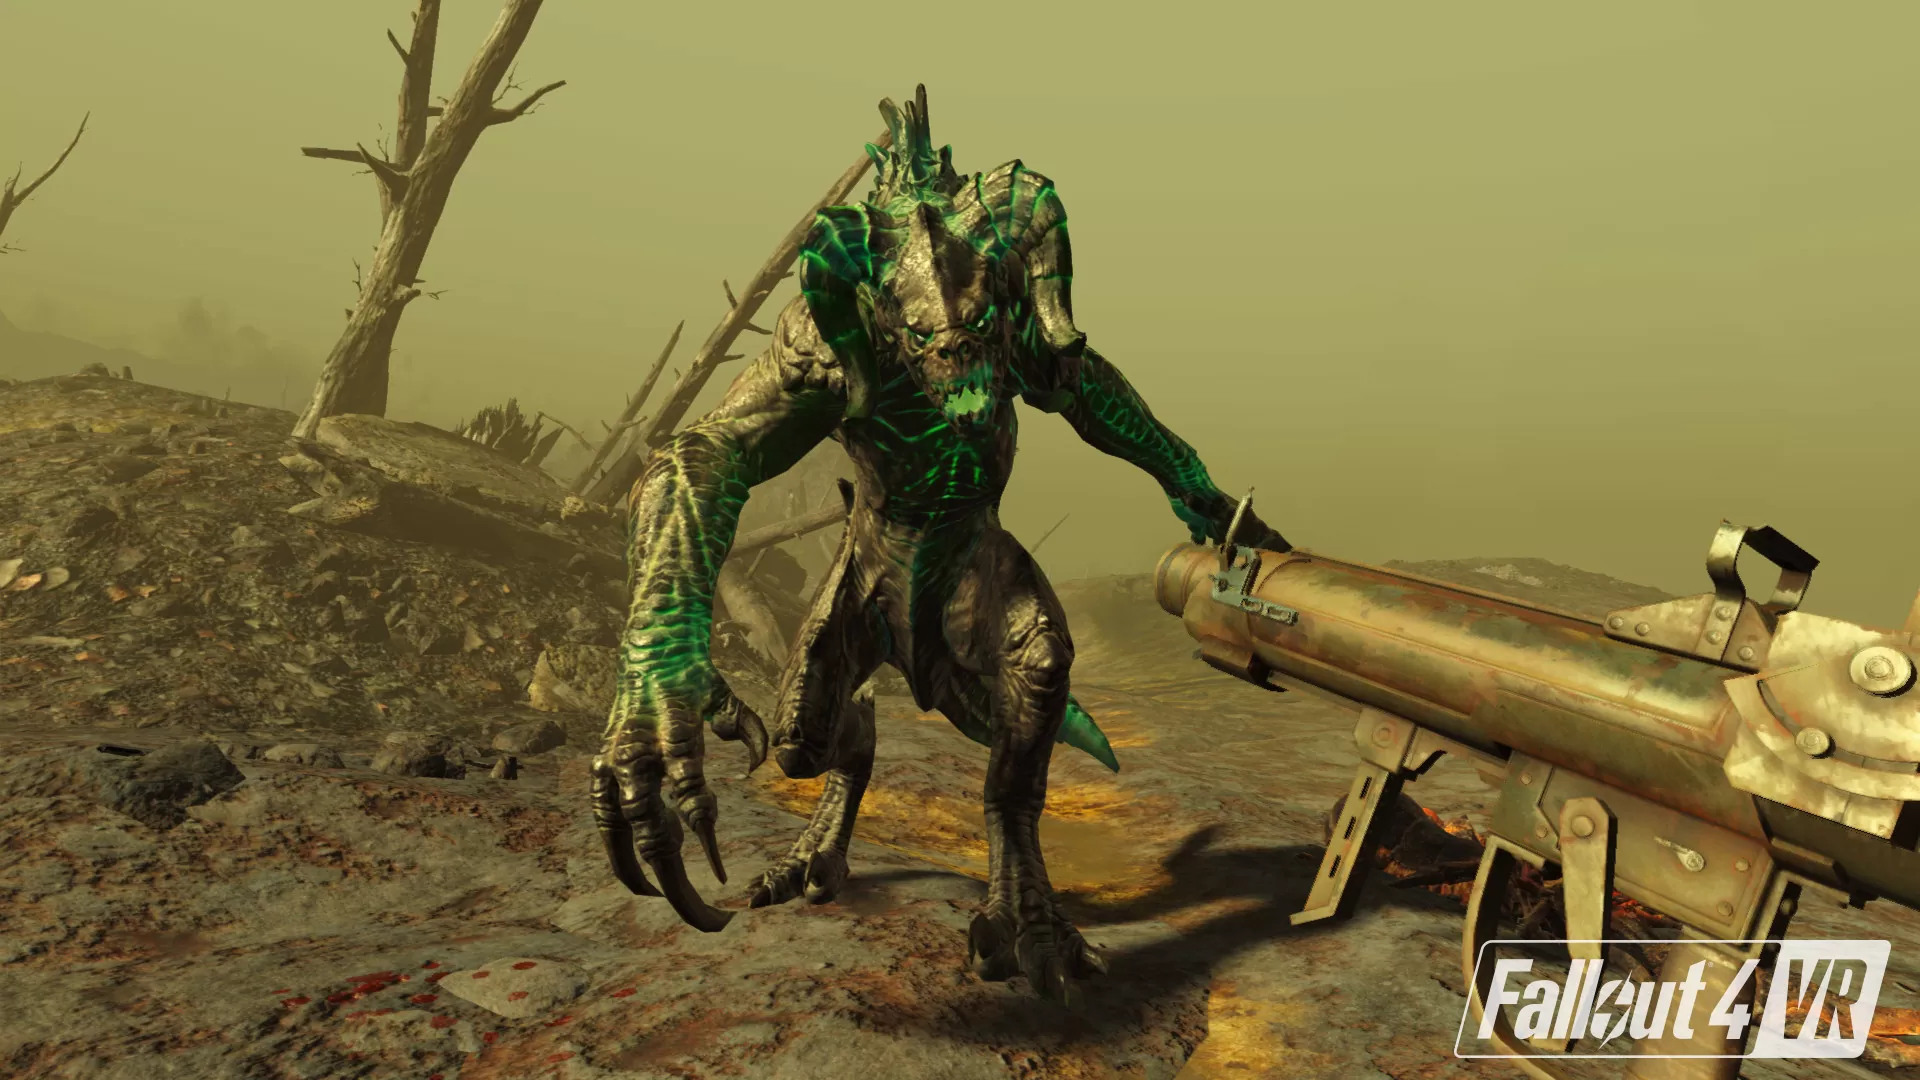 اکشن و ماجراجویی در دنیای آخرالزمانی با بازی Fallout 4